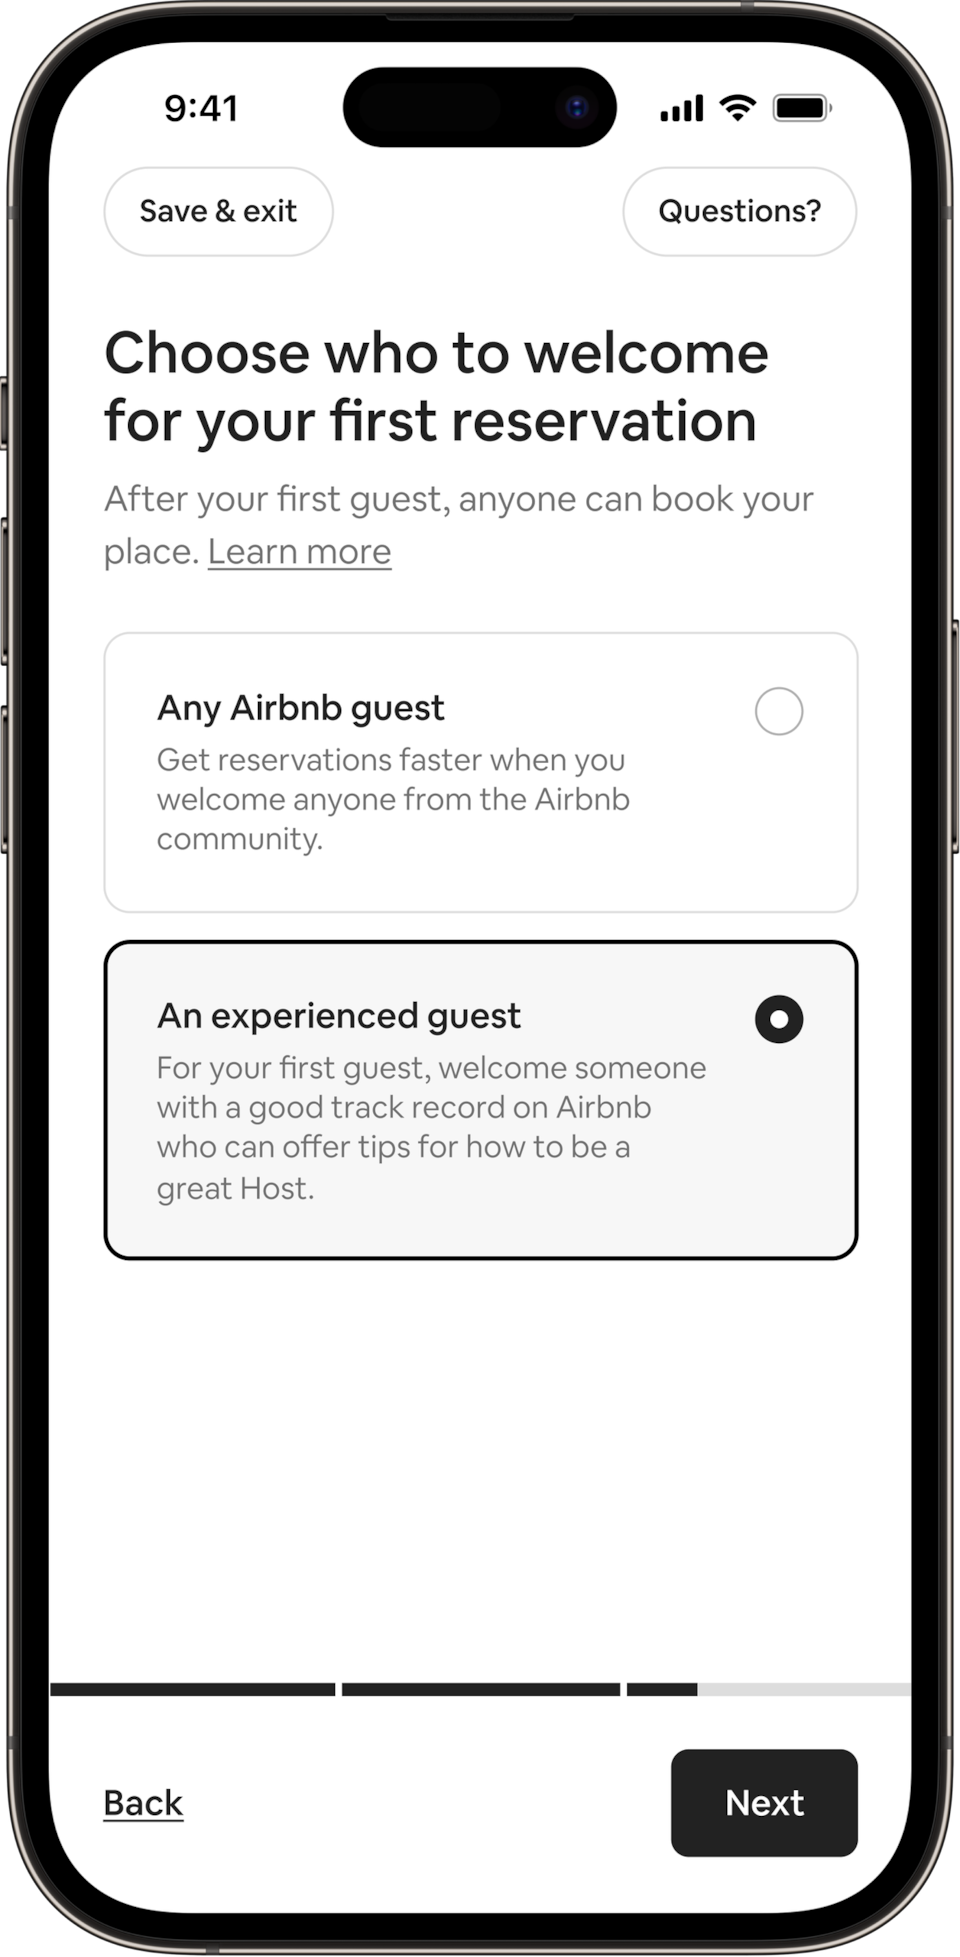 Na telefonu se nalazi sljedeći naslov: Odaberite koga ćete ugostiti u prvoj rezervaciji. Domaćini mogu prihvatiti bilo kojeg gosta na Airbnbu ili iskusnog gosta. Odabrano je dugme za iskusnog gosta.